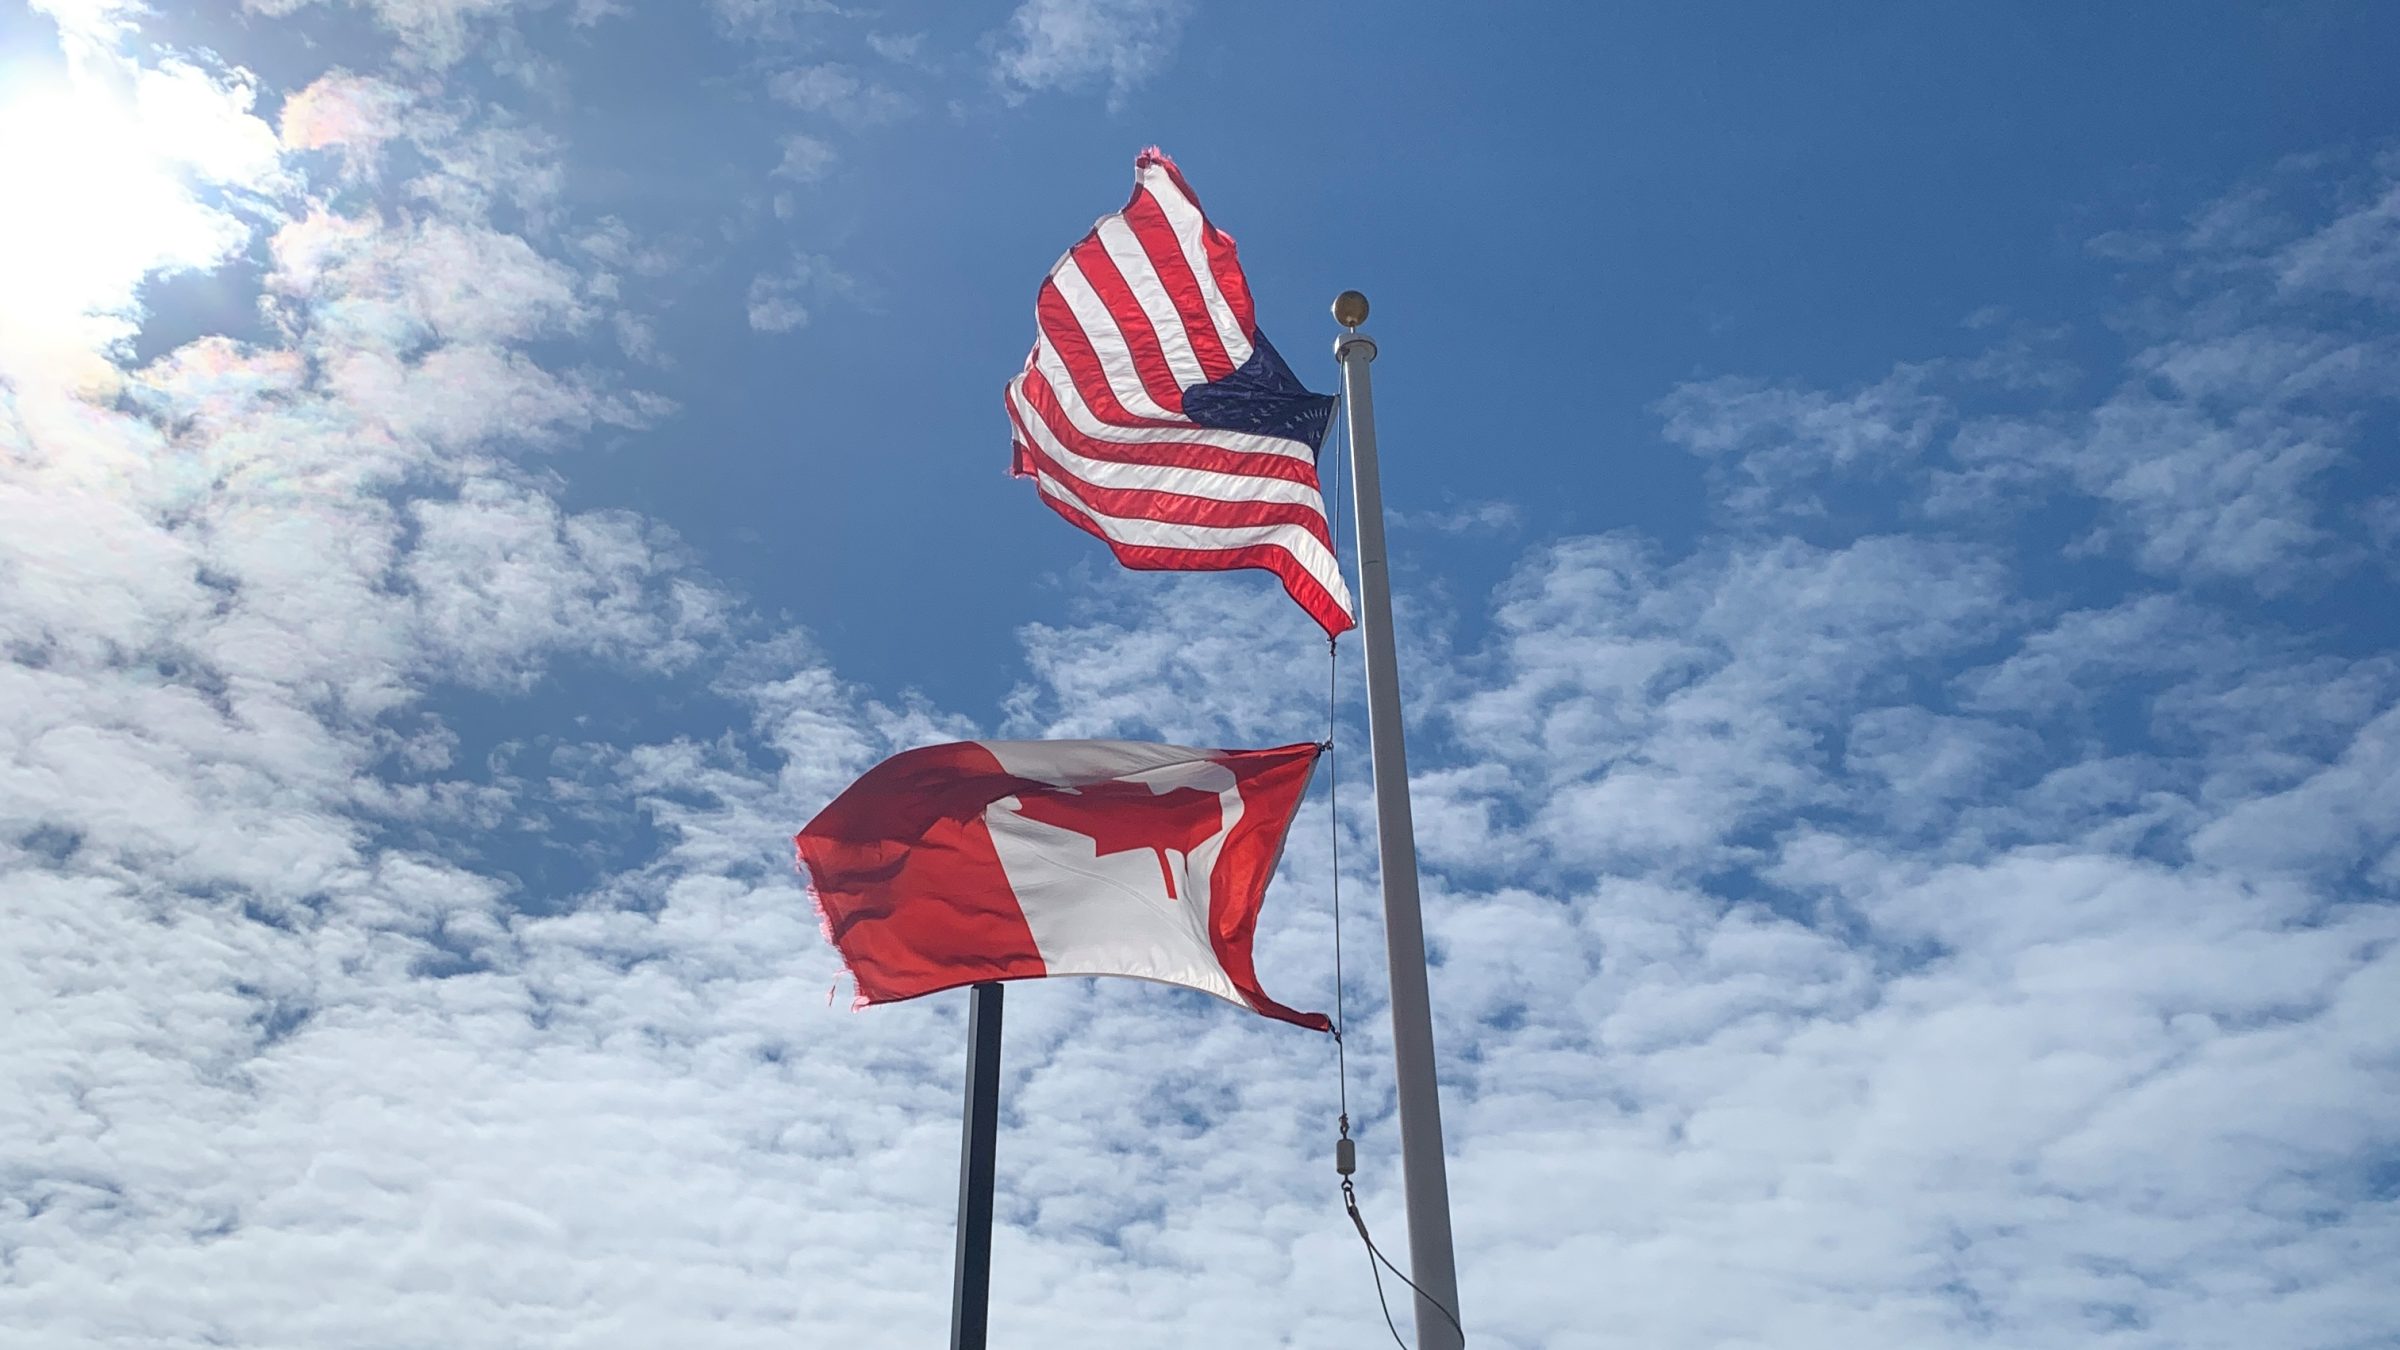 La bandera canadiense y estadounidense